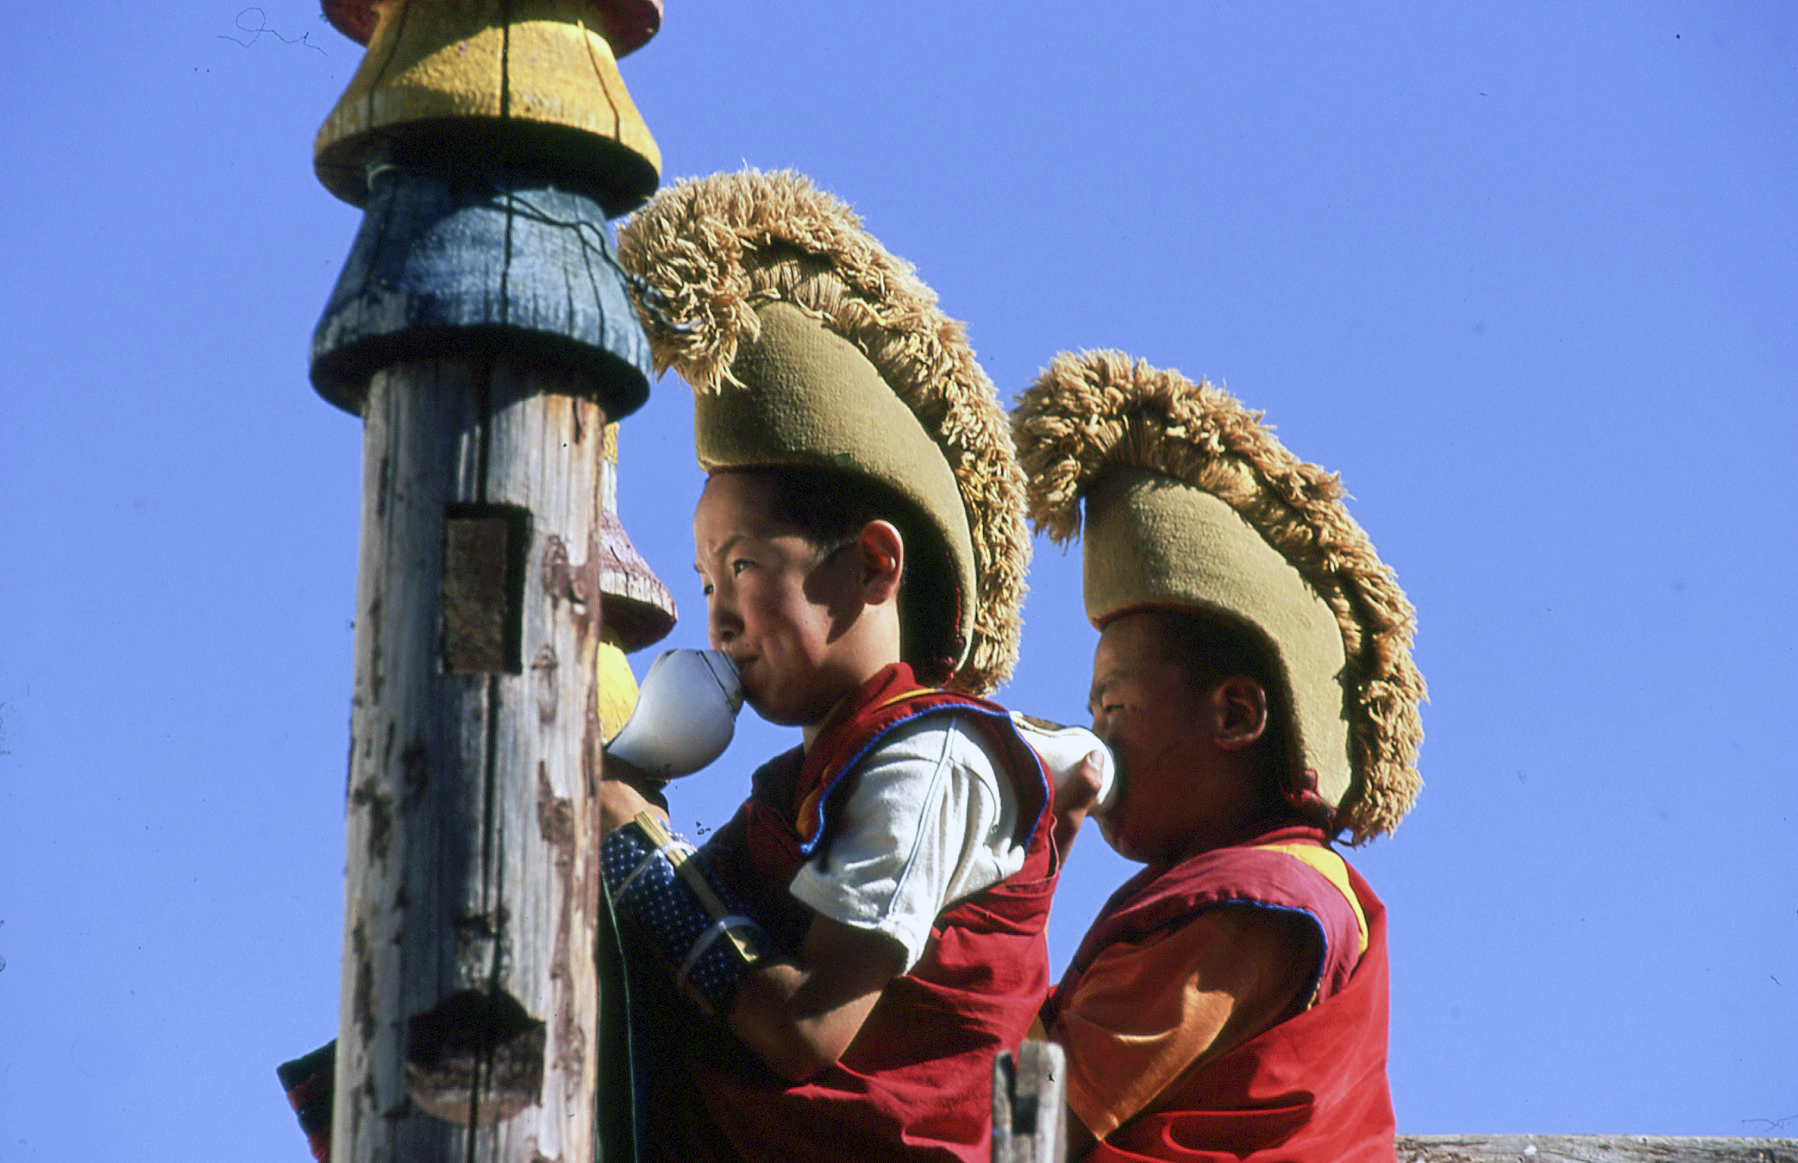 Call to prayer - Mongolia...